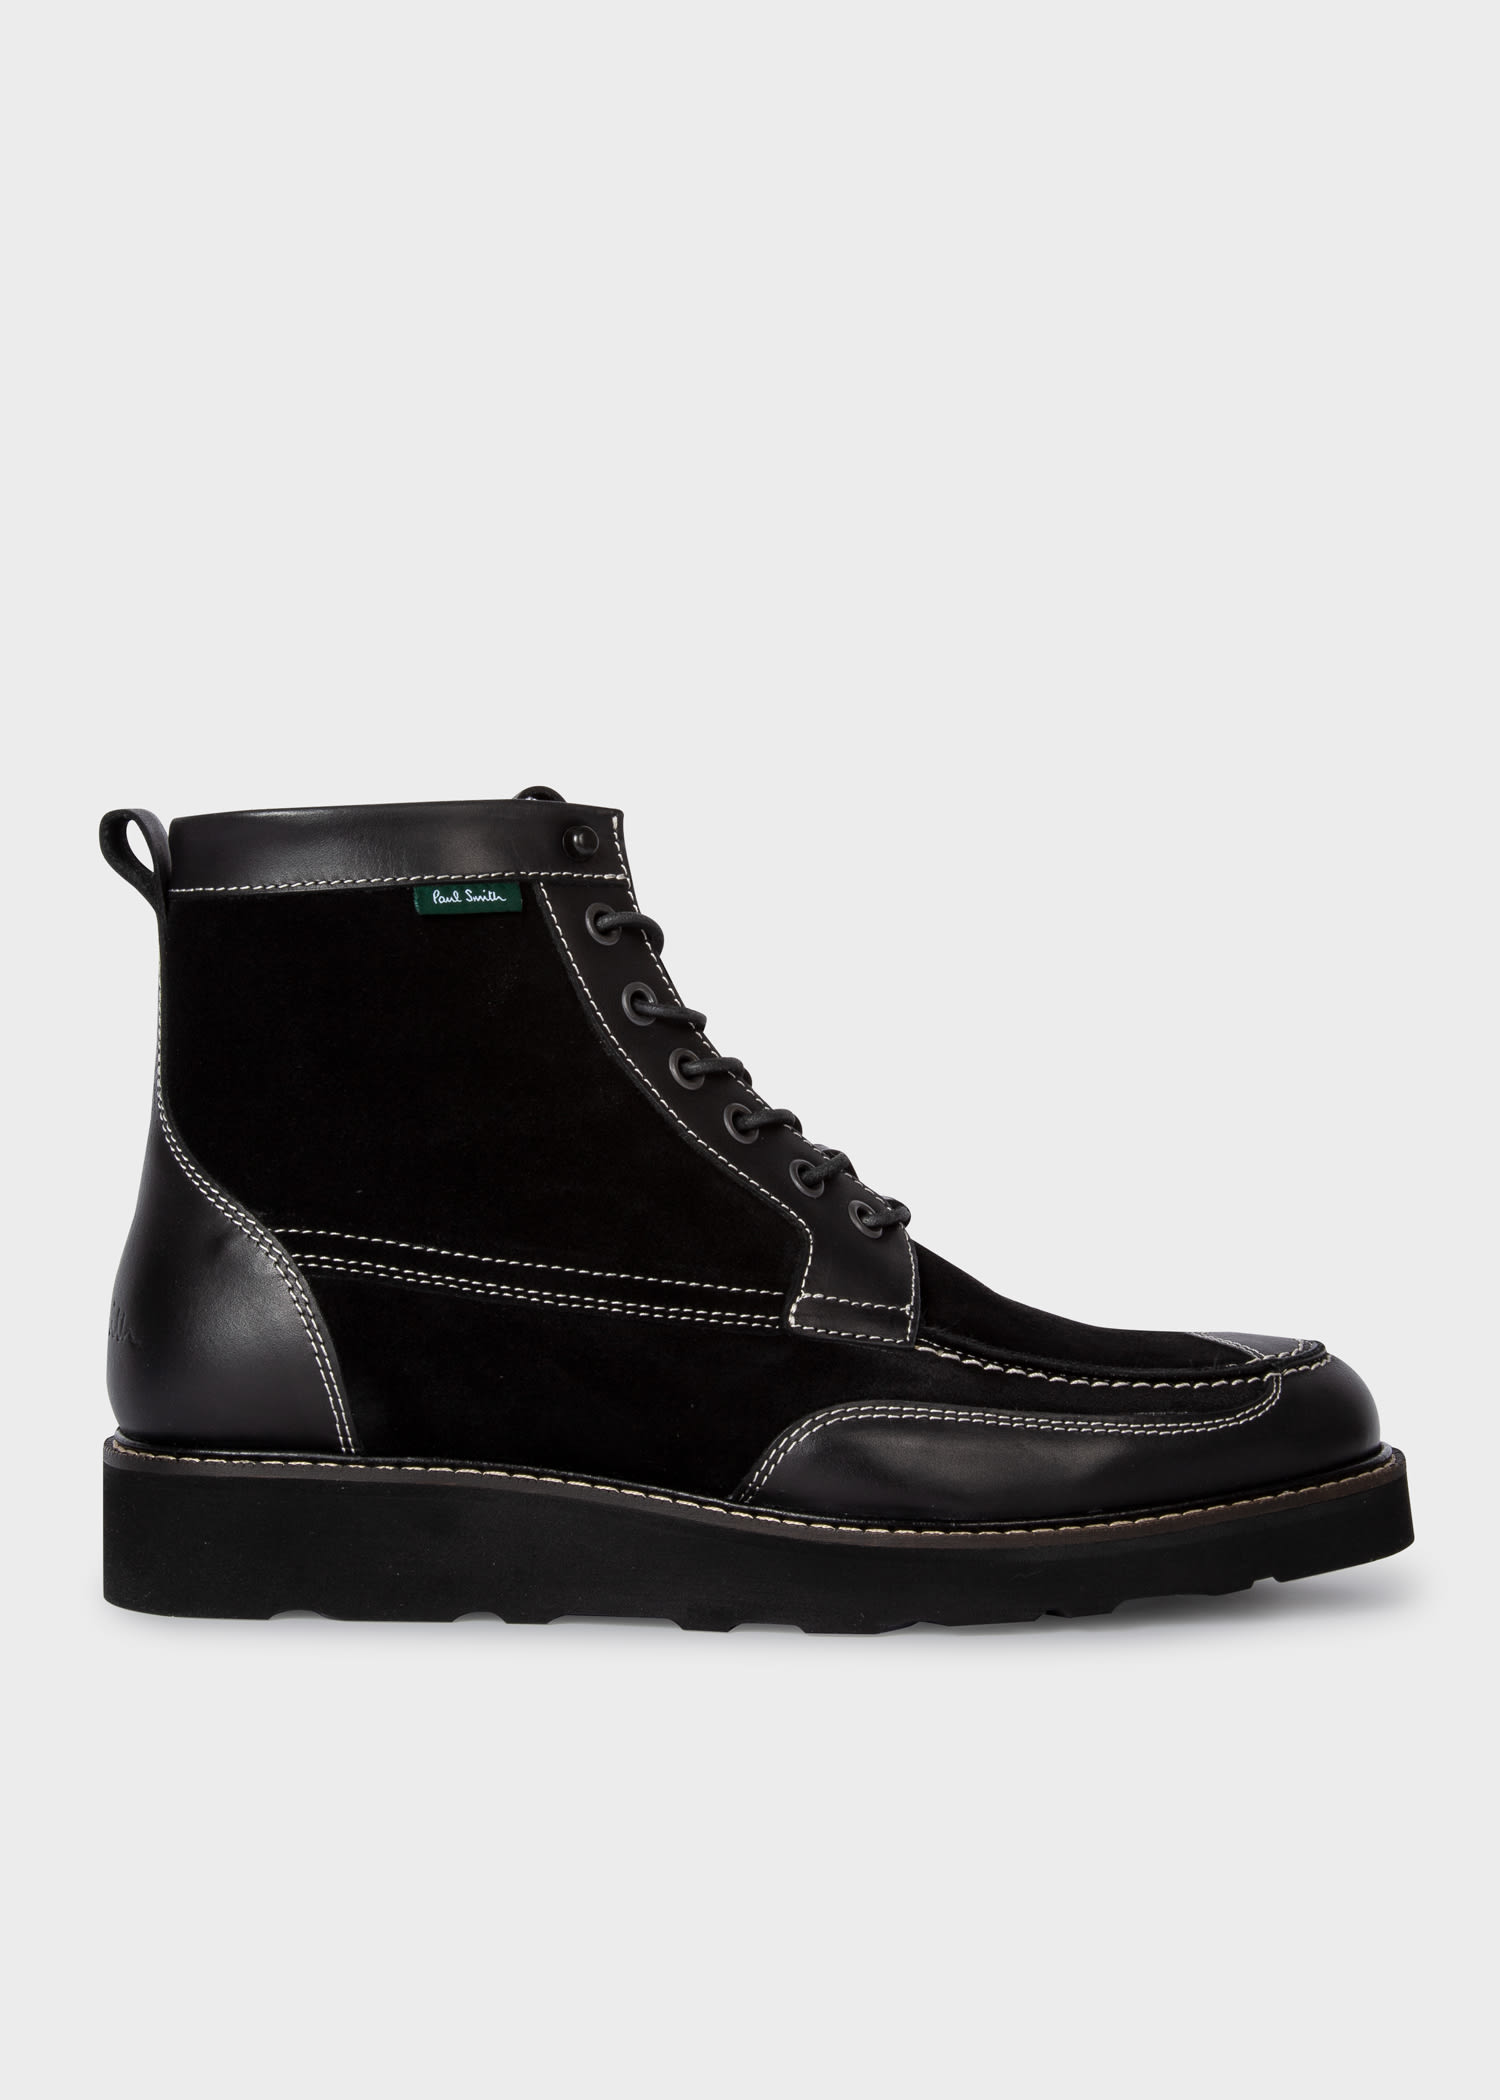 Men's Designer Boots | Chelsea, Zip, & Chukka Boots - Paul Smith